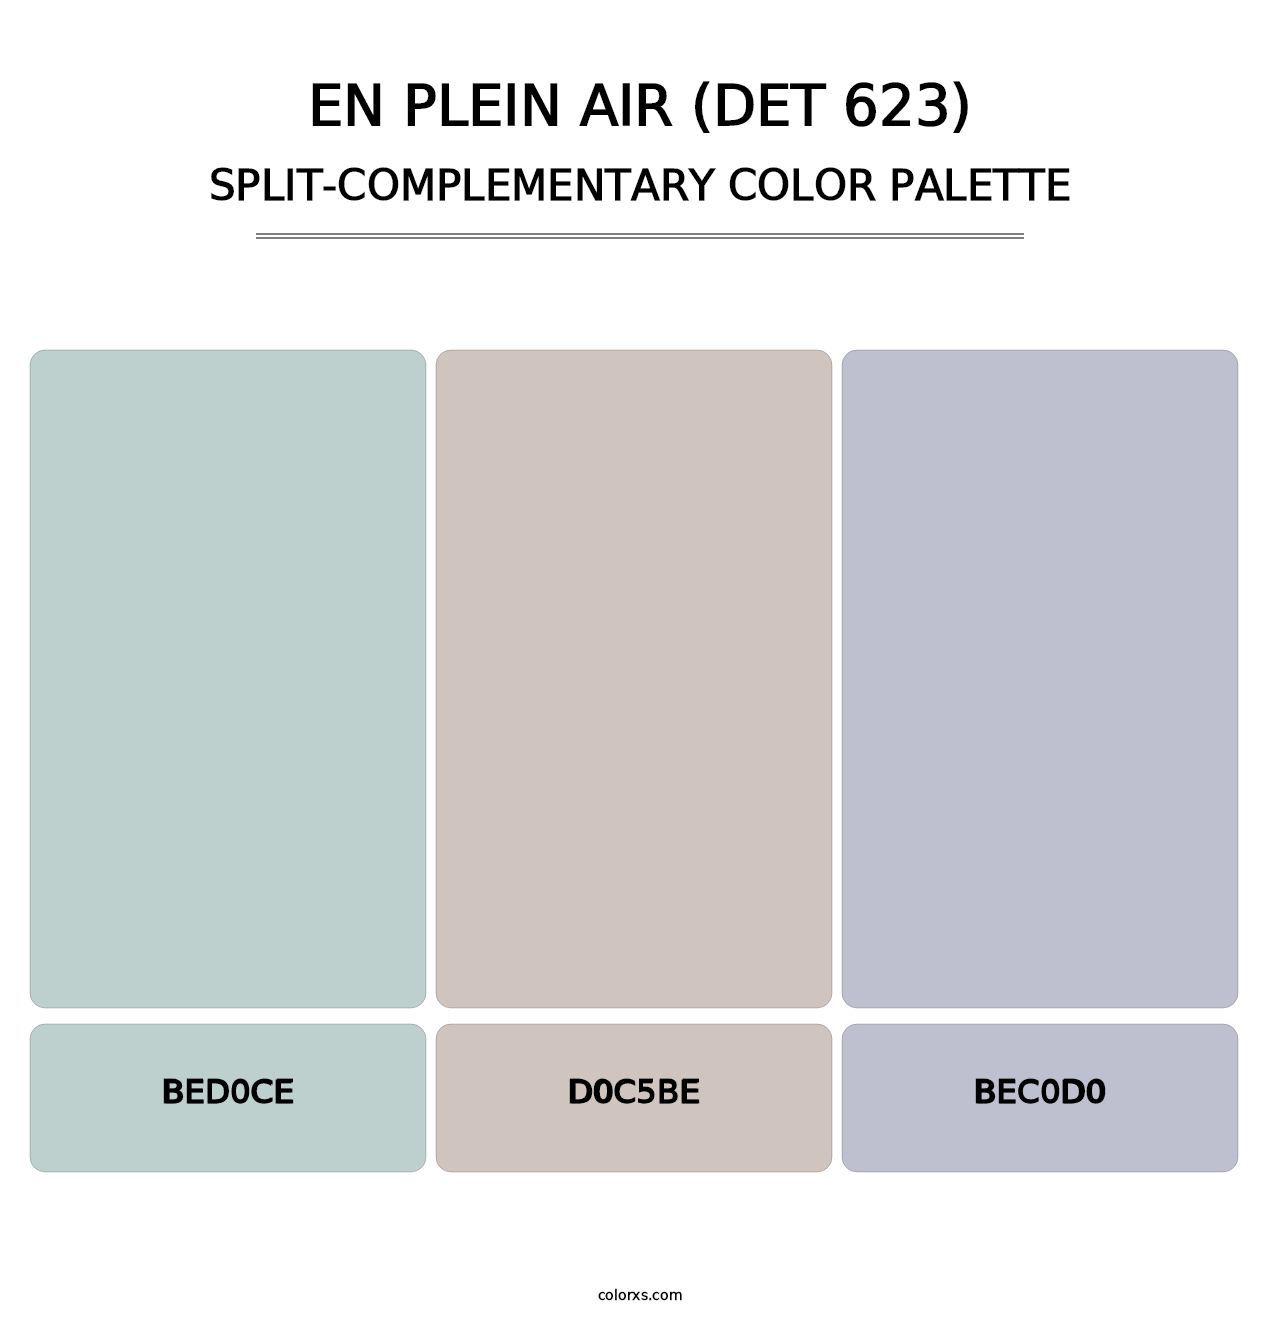 En Plein Air (DET 623) - Split-Complementary Color Palette